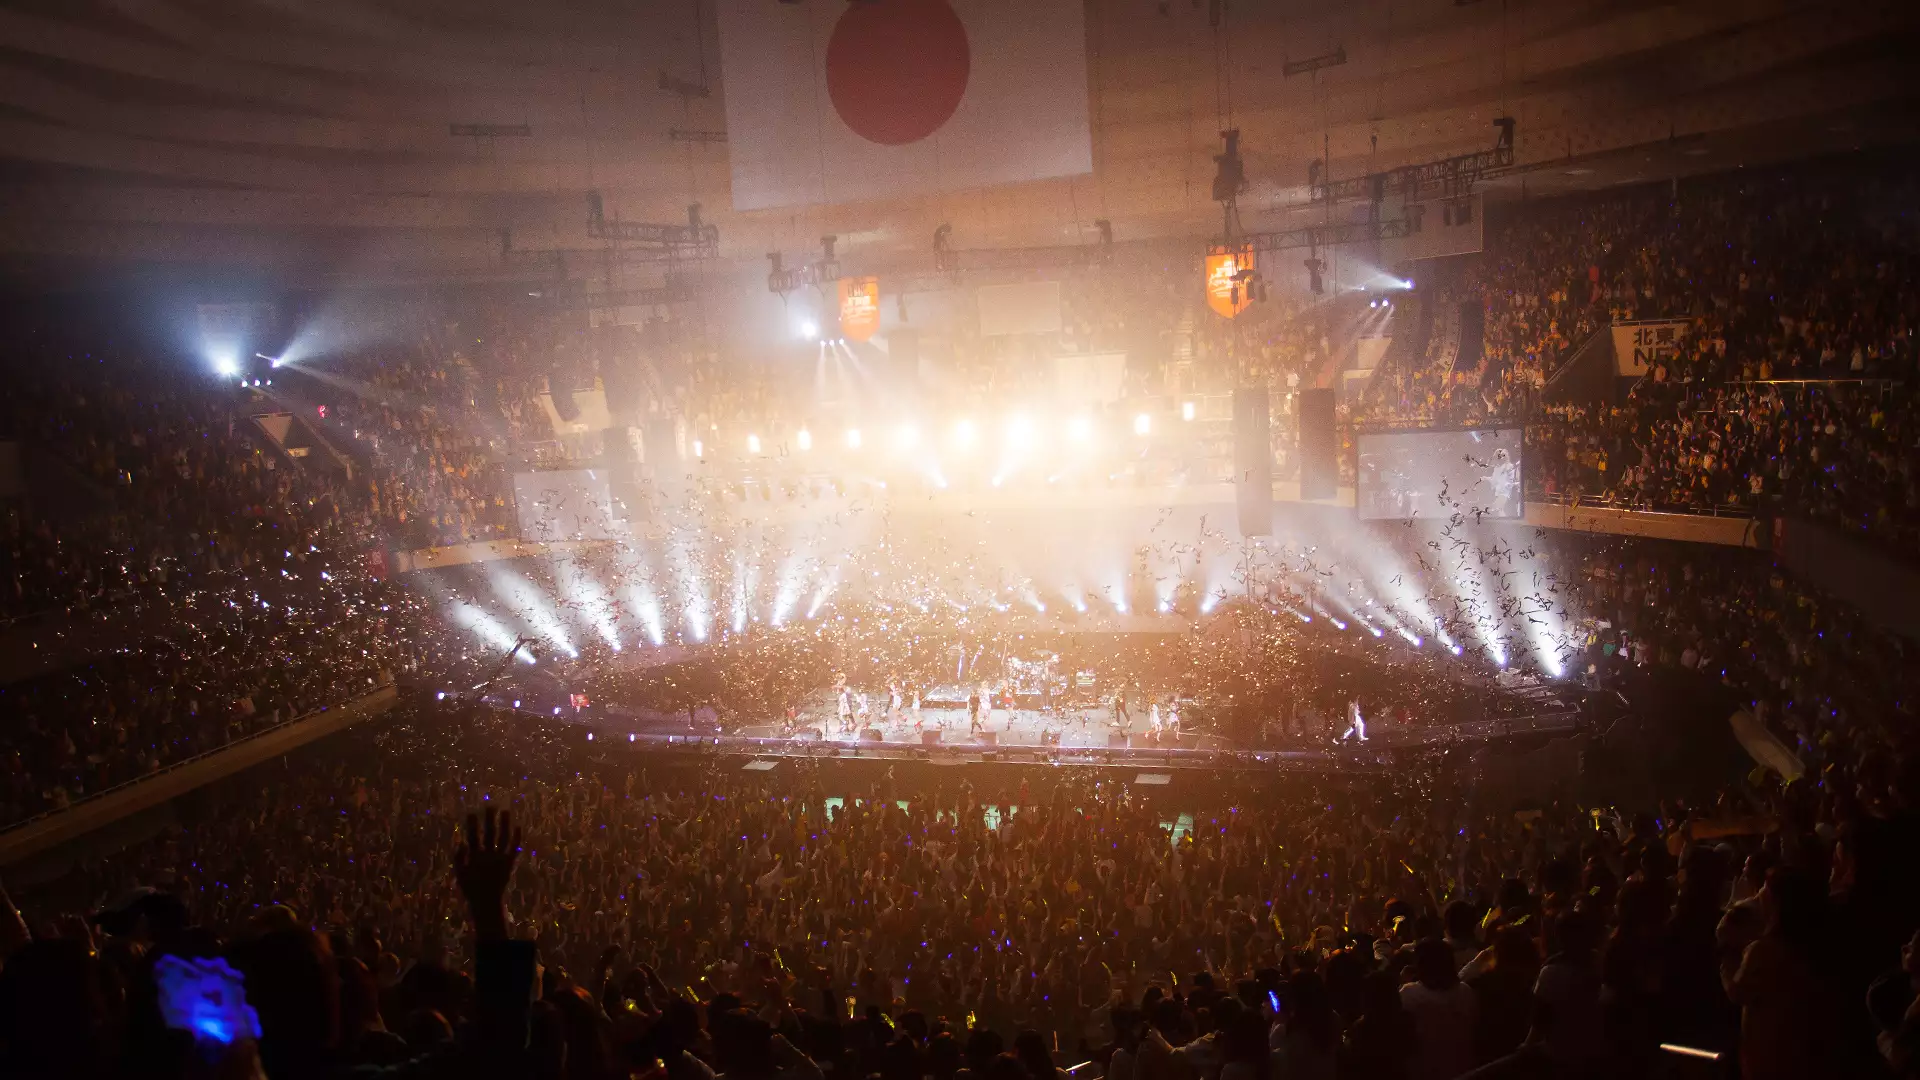 2013 FNC KINGDOM IN JAPAN -Fantastic & Crazy-